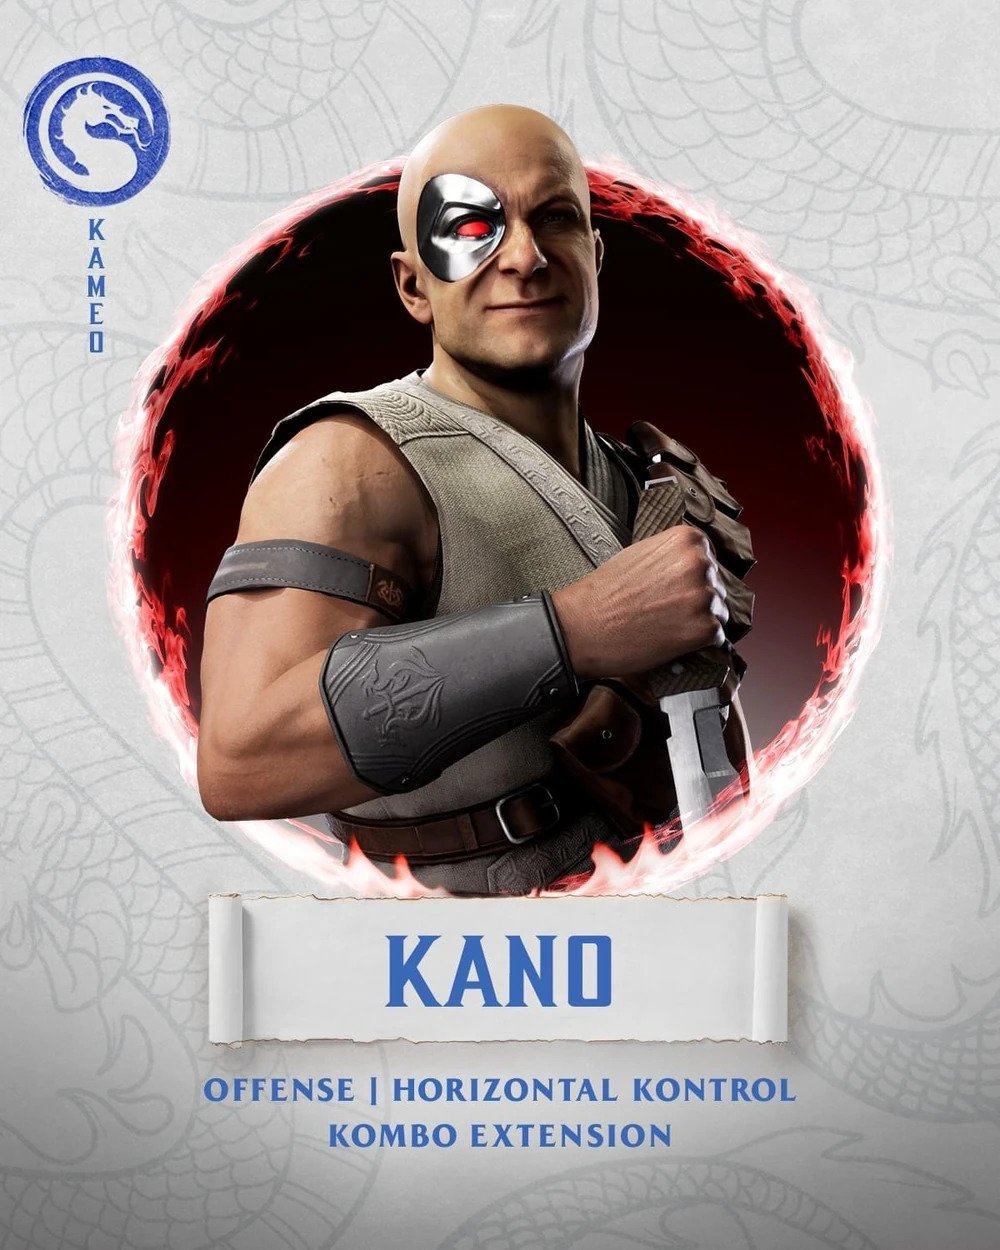 Mortal Kombat 11 - Johnny Cage Vs. Kano (VERY HARD) 